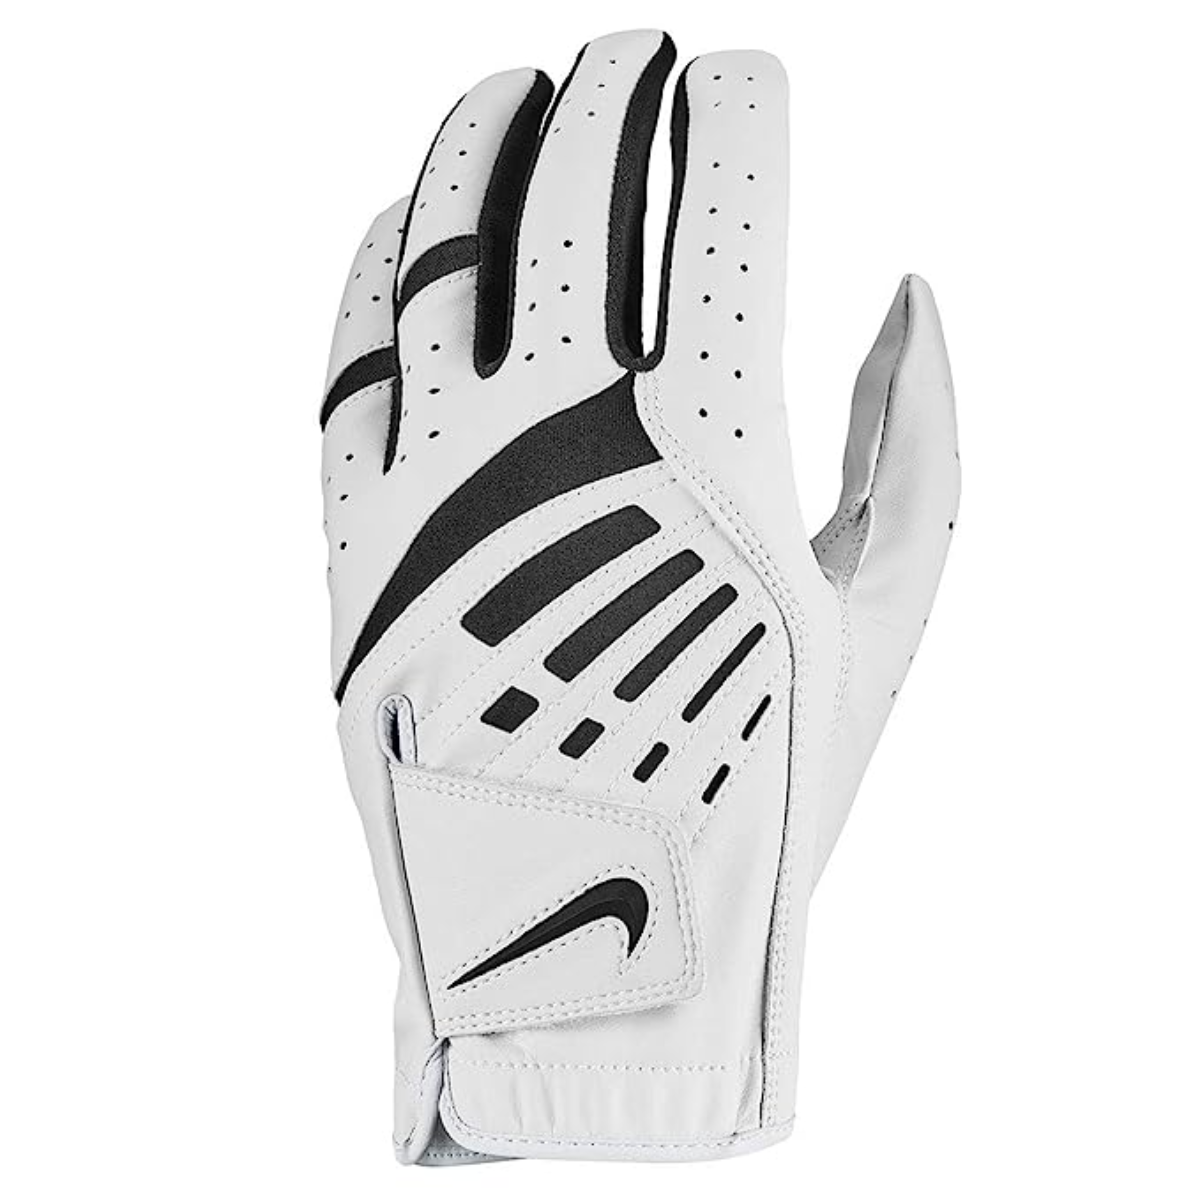 Nike Dura Feel Golf Glove